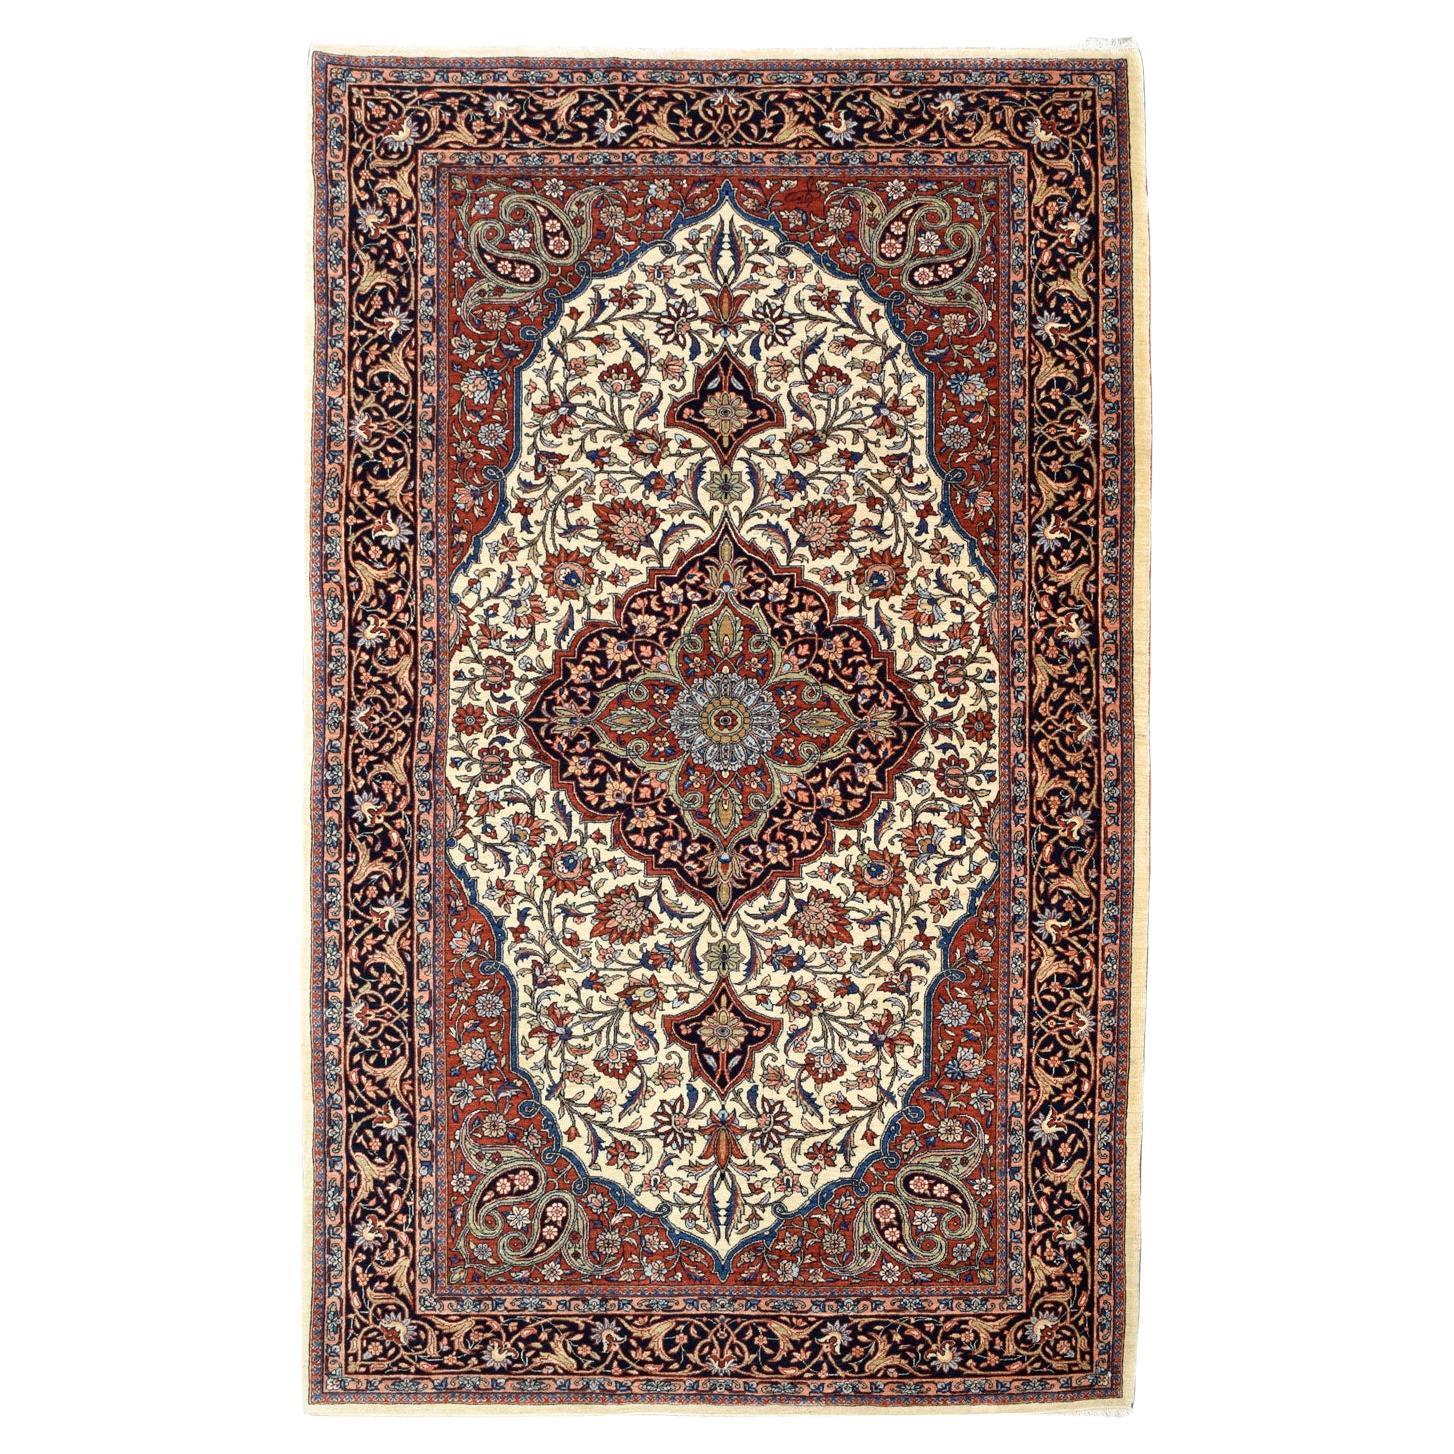 Mohtashan Persischer Teppich aus reiner Wolle in Blau, Rot und Creme, 5' x 7'